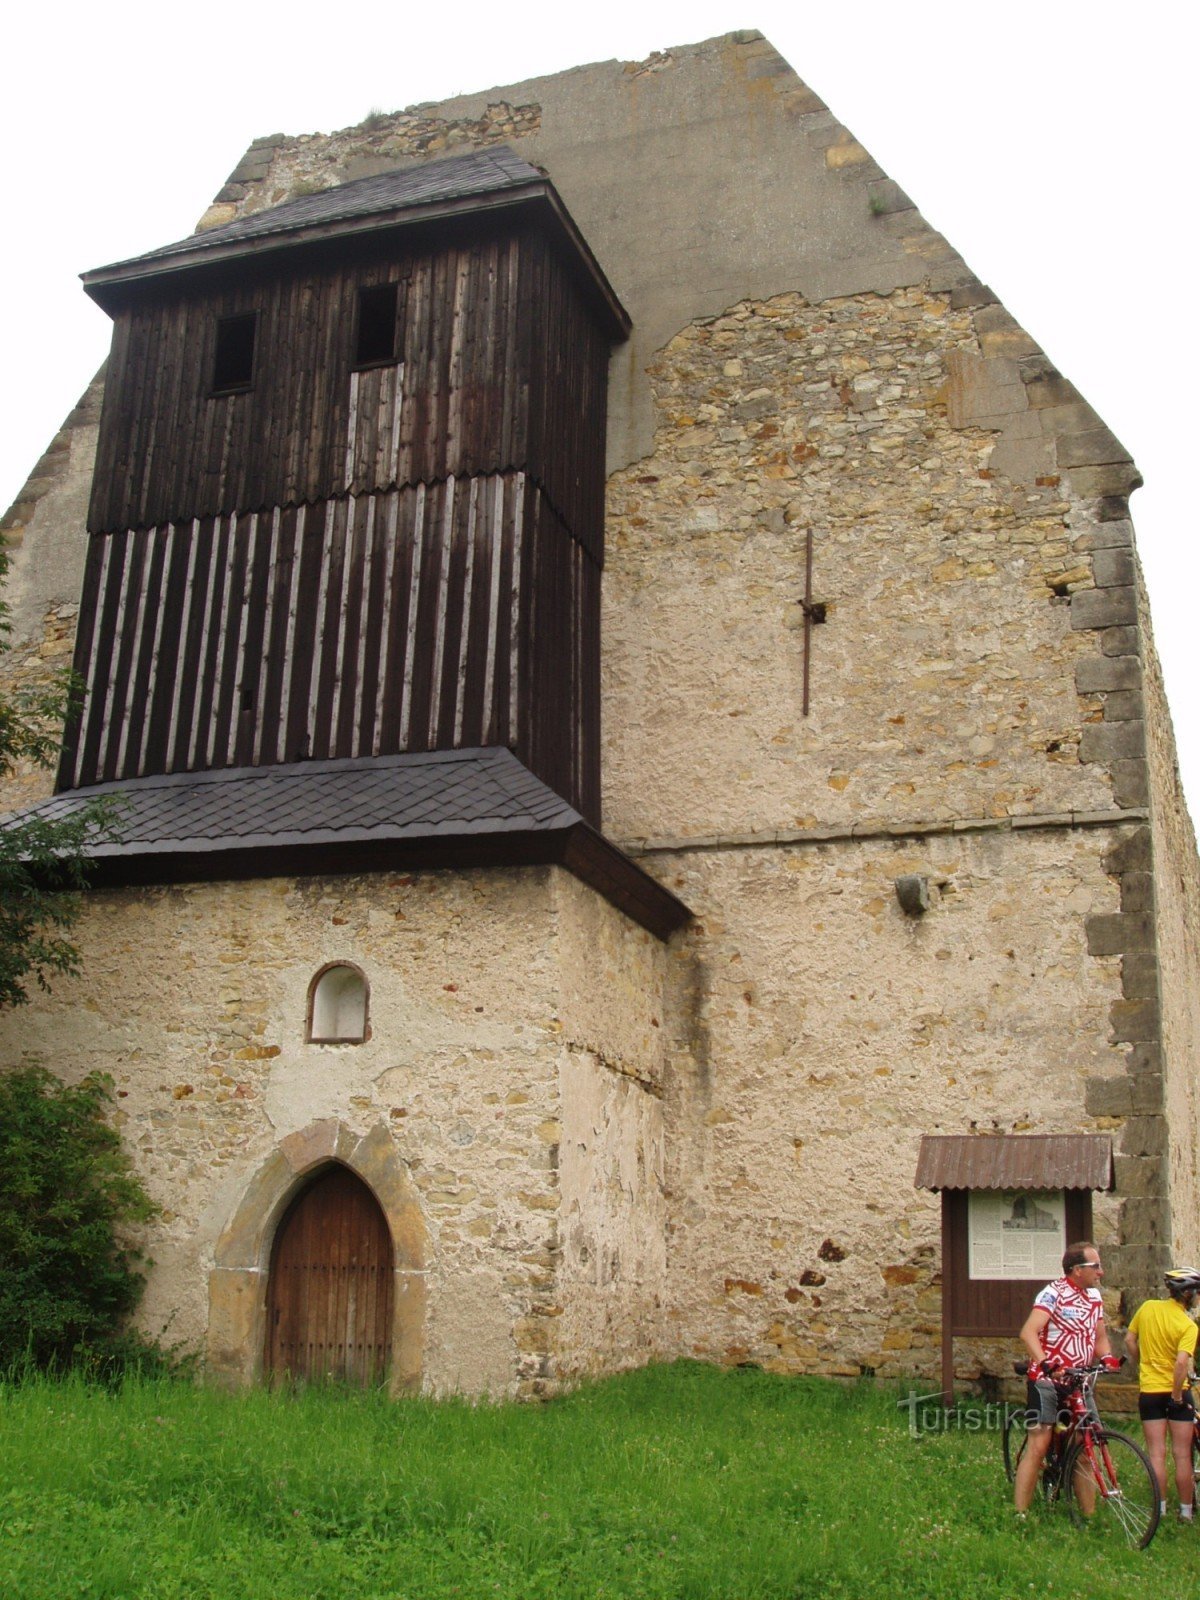 Остатки монастырской церкви с колокольней